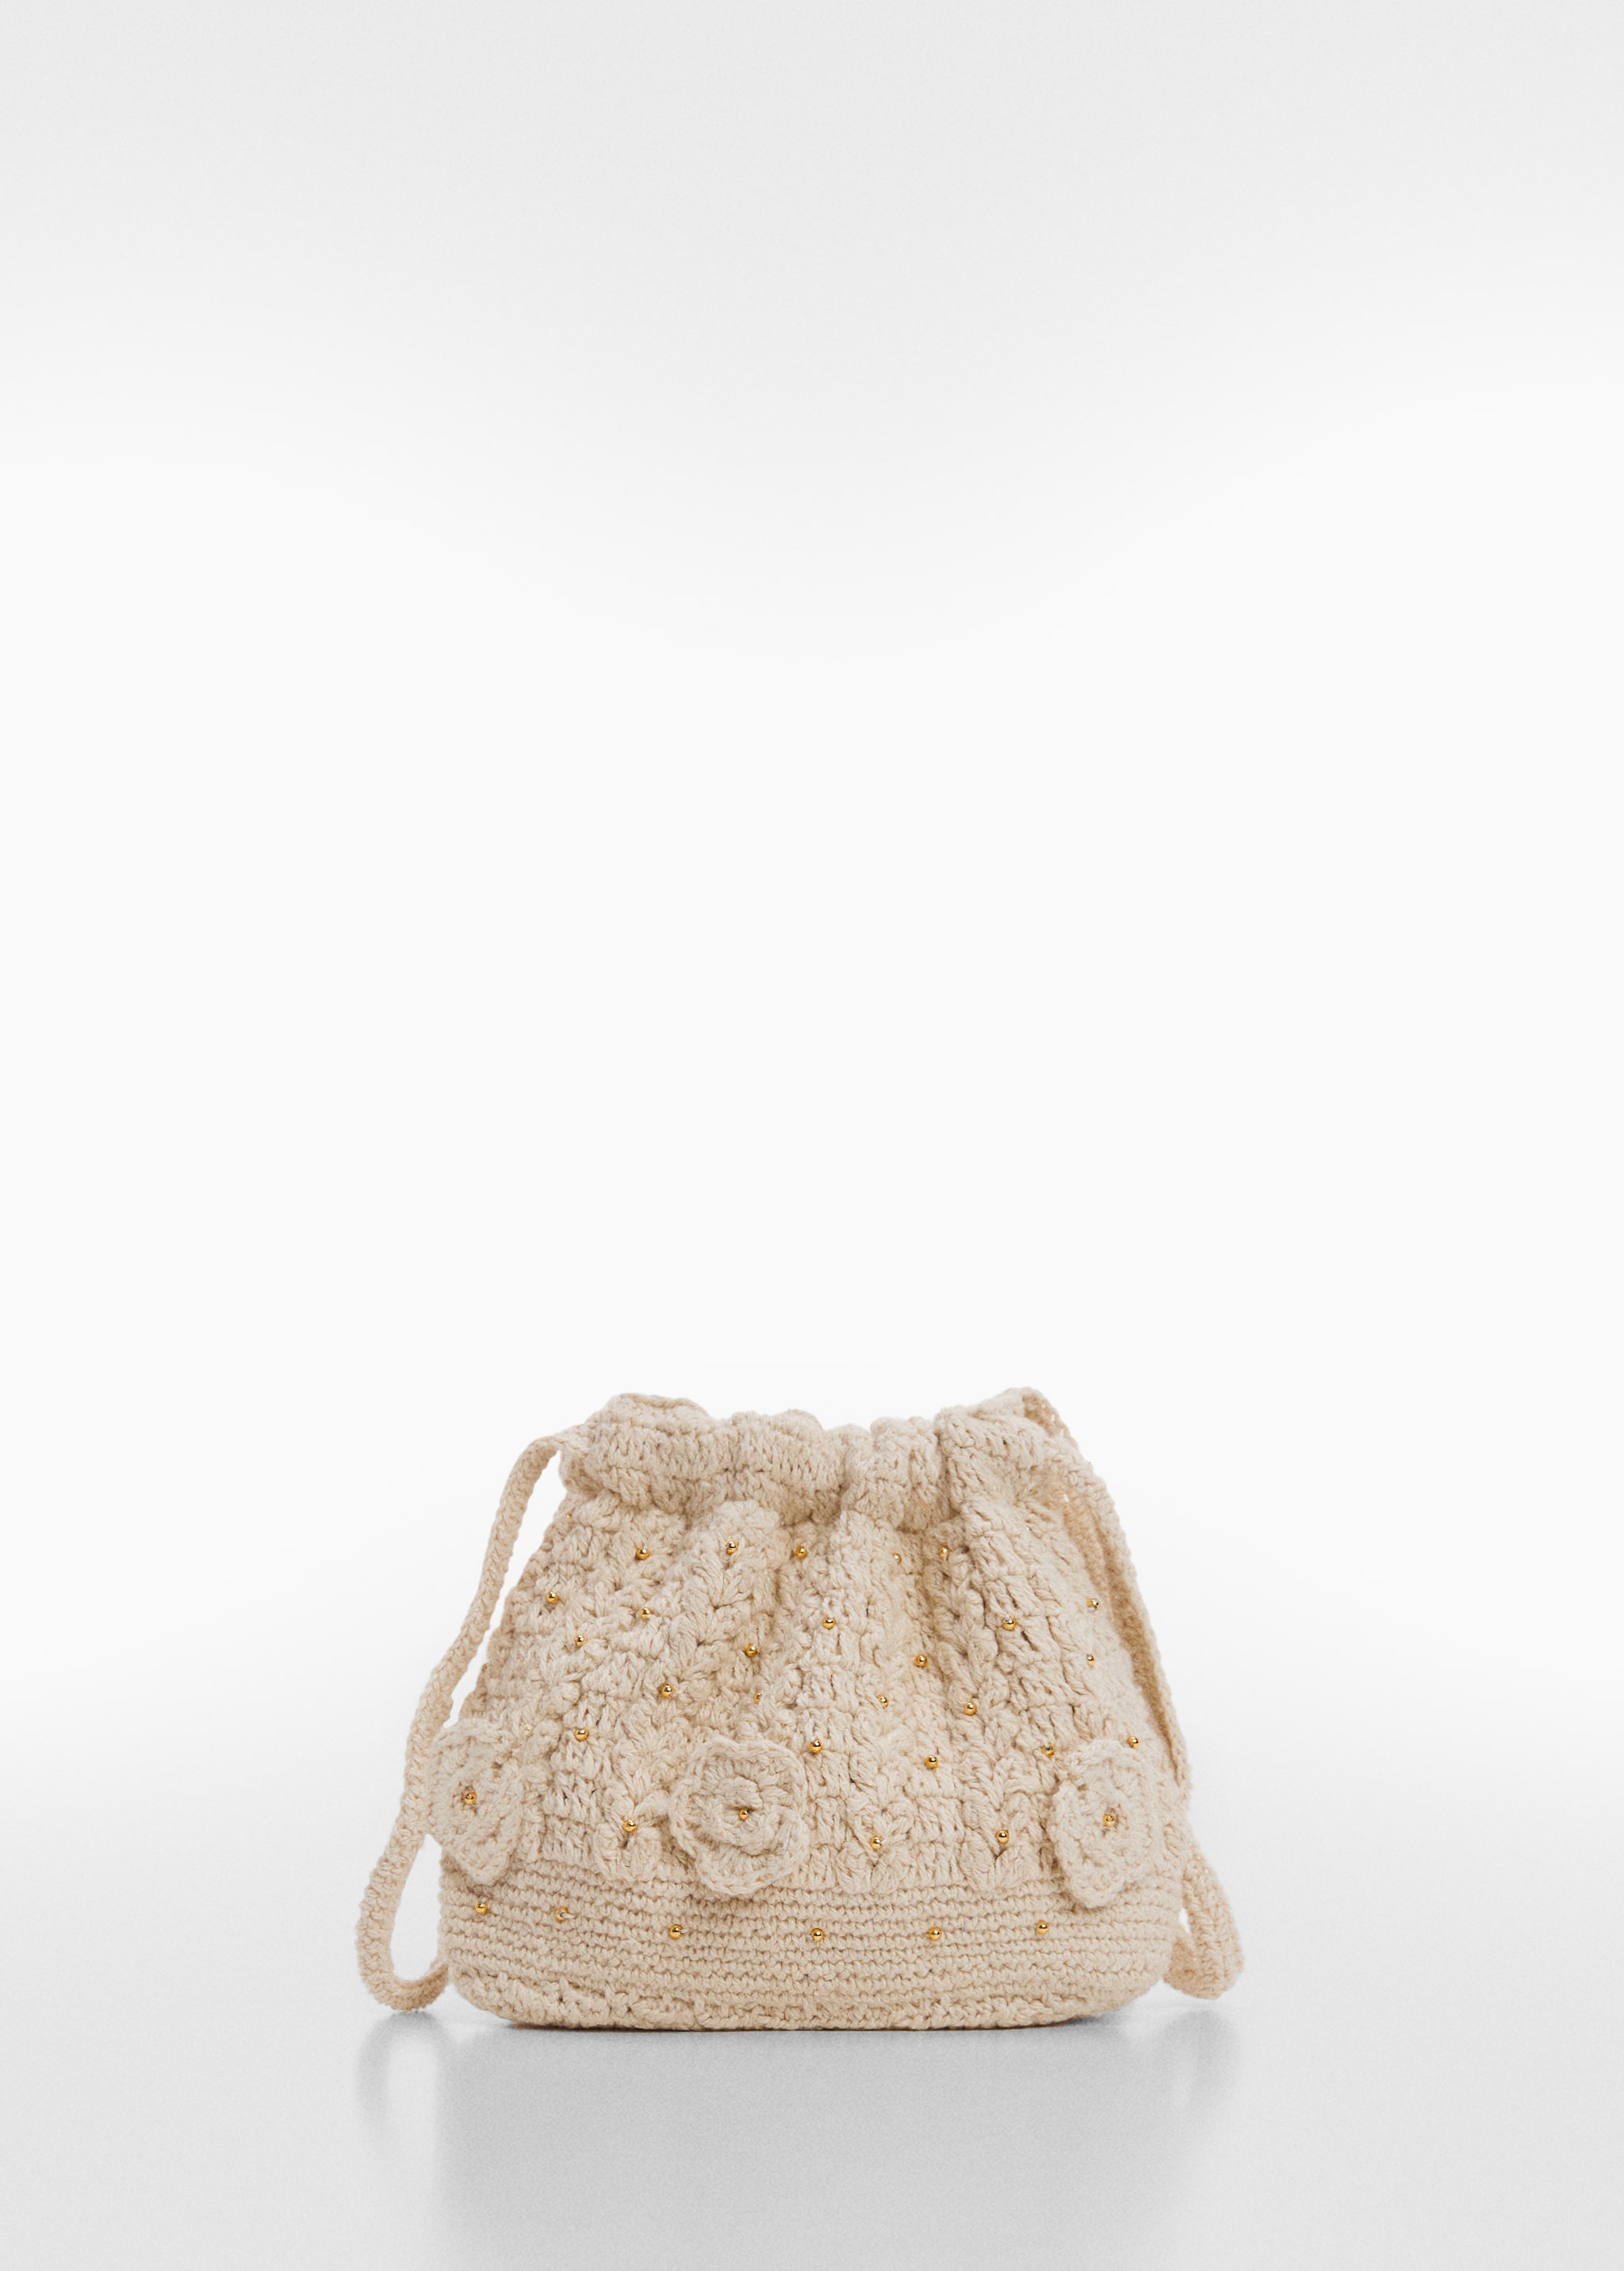 Bolso crochet flores - Artículo sin modelo